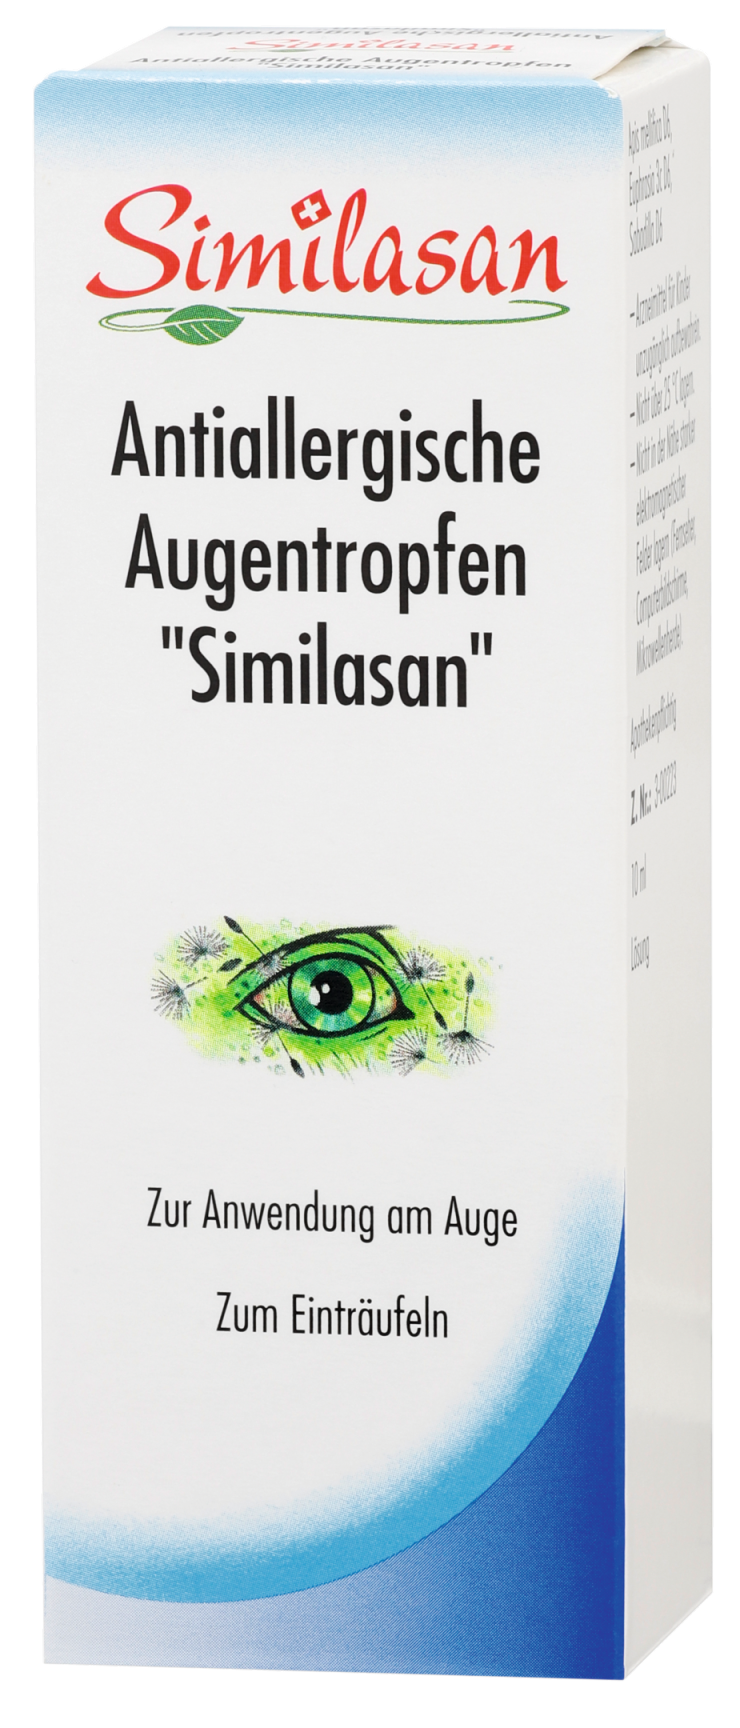 Abbildung Antiallergische Augentropfen "Similasan"